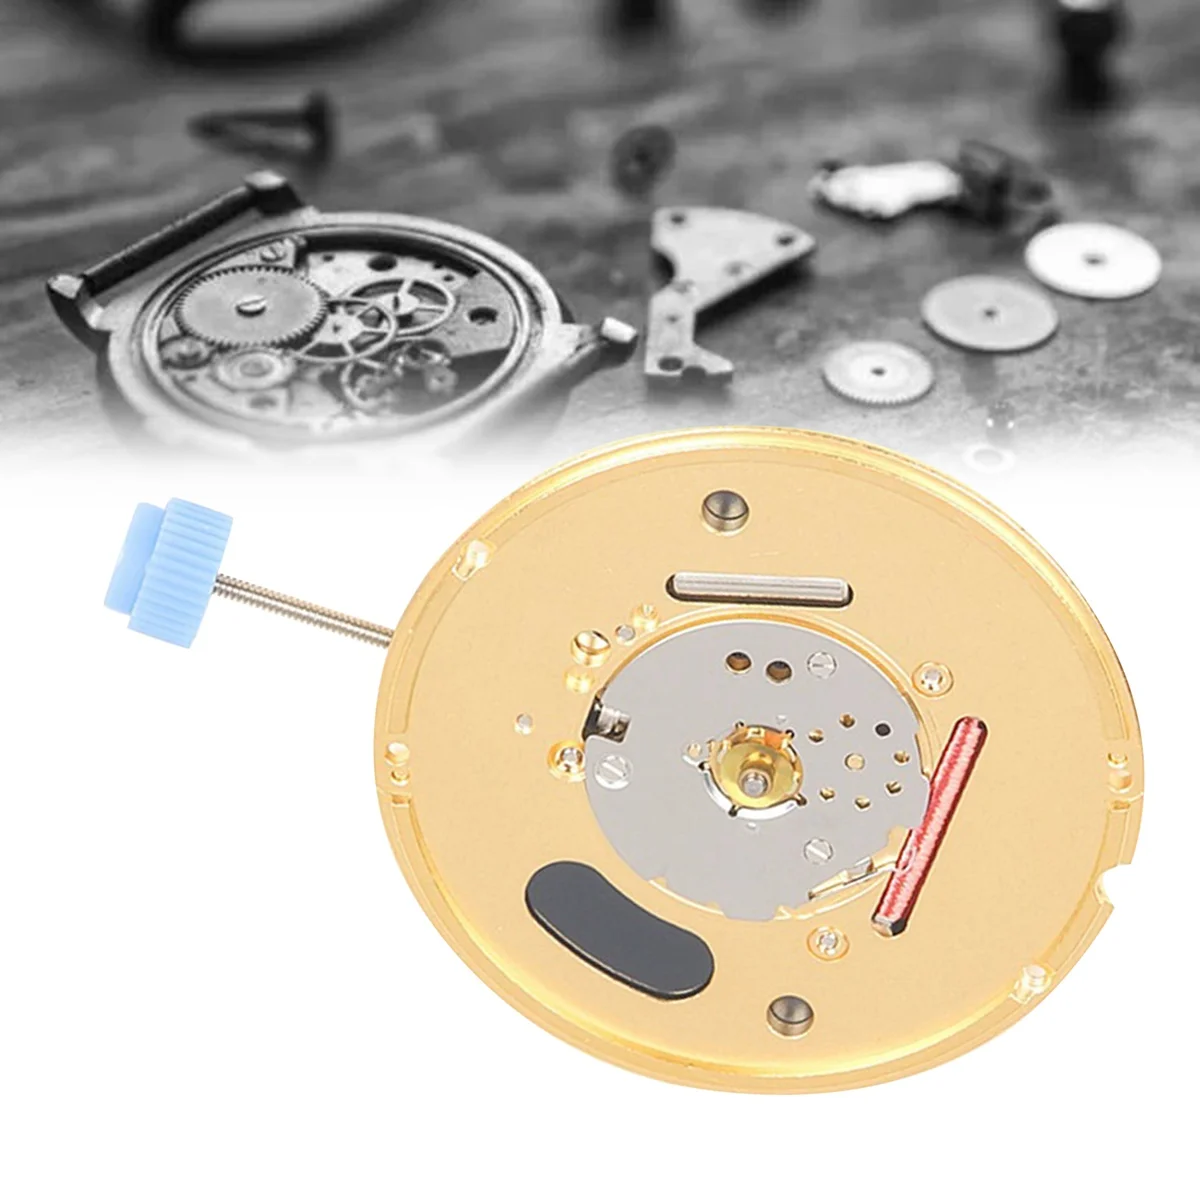 Часы F06101 с механизмом ETA F06.101 без календаря, двухконтактный Высокоточный механический кварцевый часовой механизм